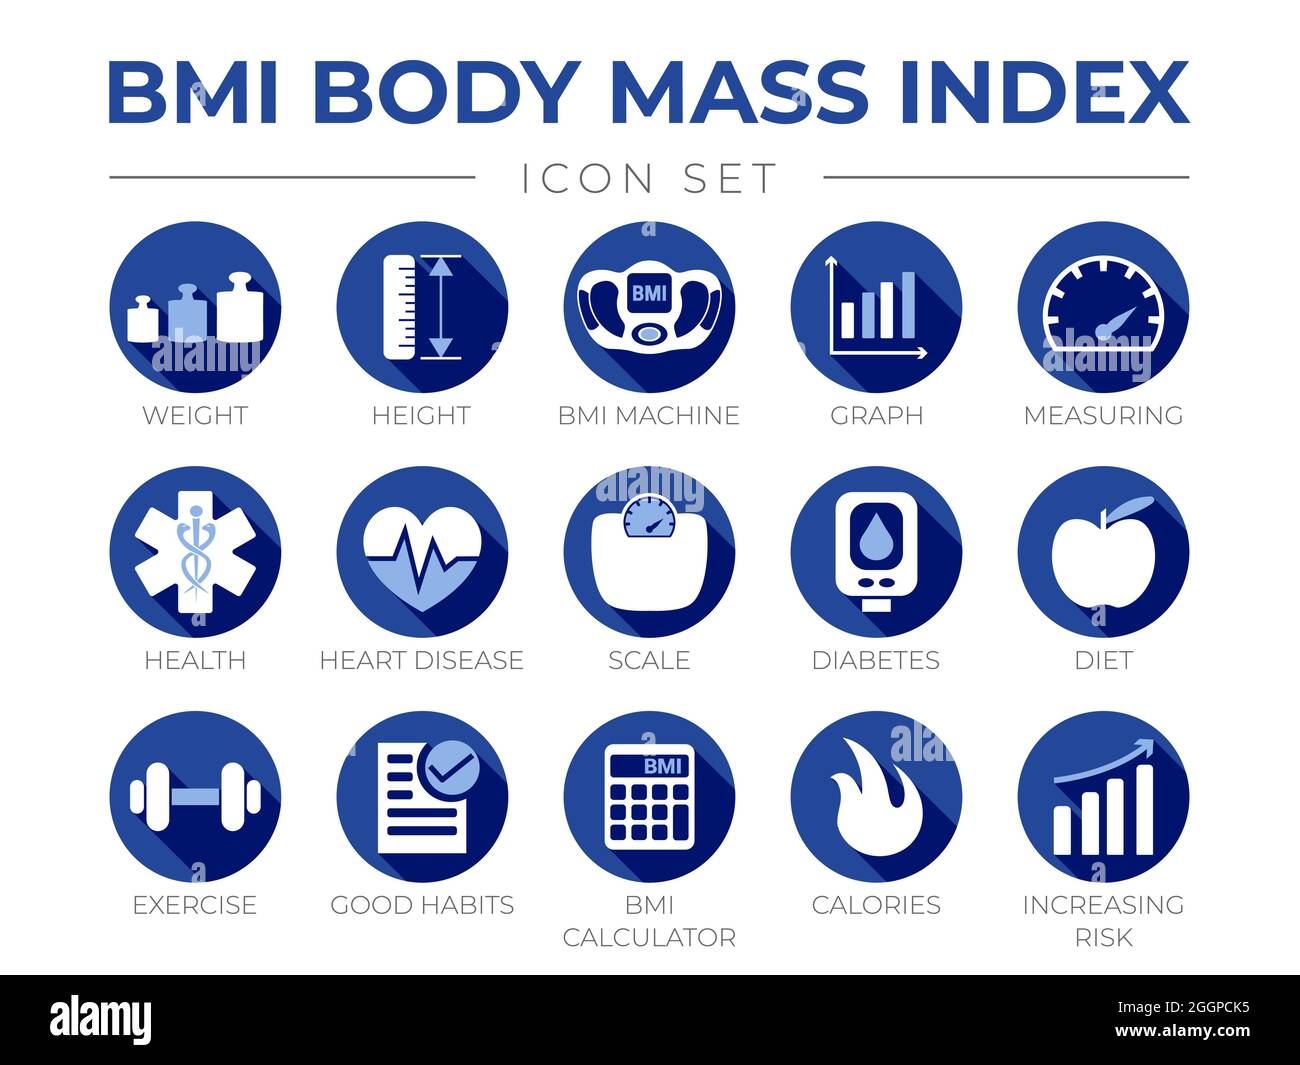 Indice di massa corporea BMI blu - icona rotonda Set di peso, altezza, macchina BMI, grafico, misurazione, Salute, malattie cardiache, Scala, diabete, dieta, Esercizio, Habi Illustrazione Vettoriale